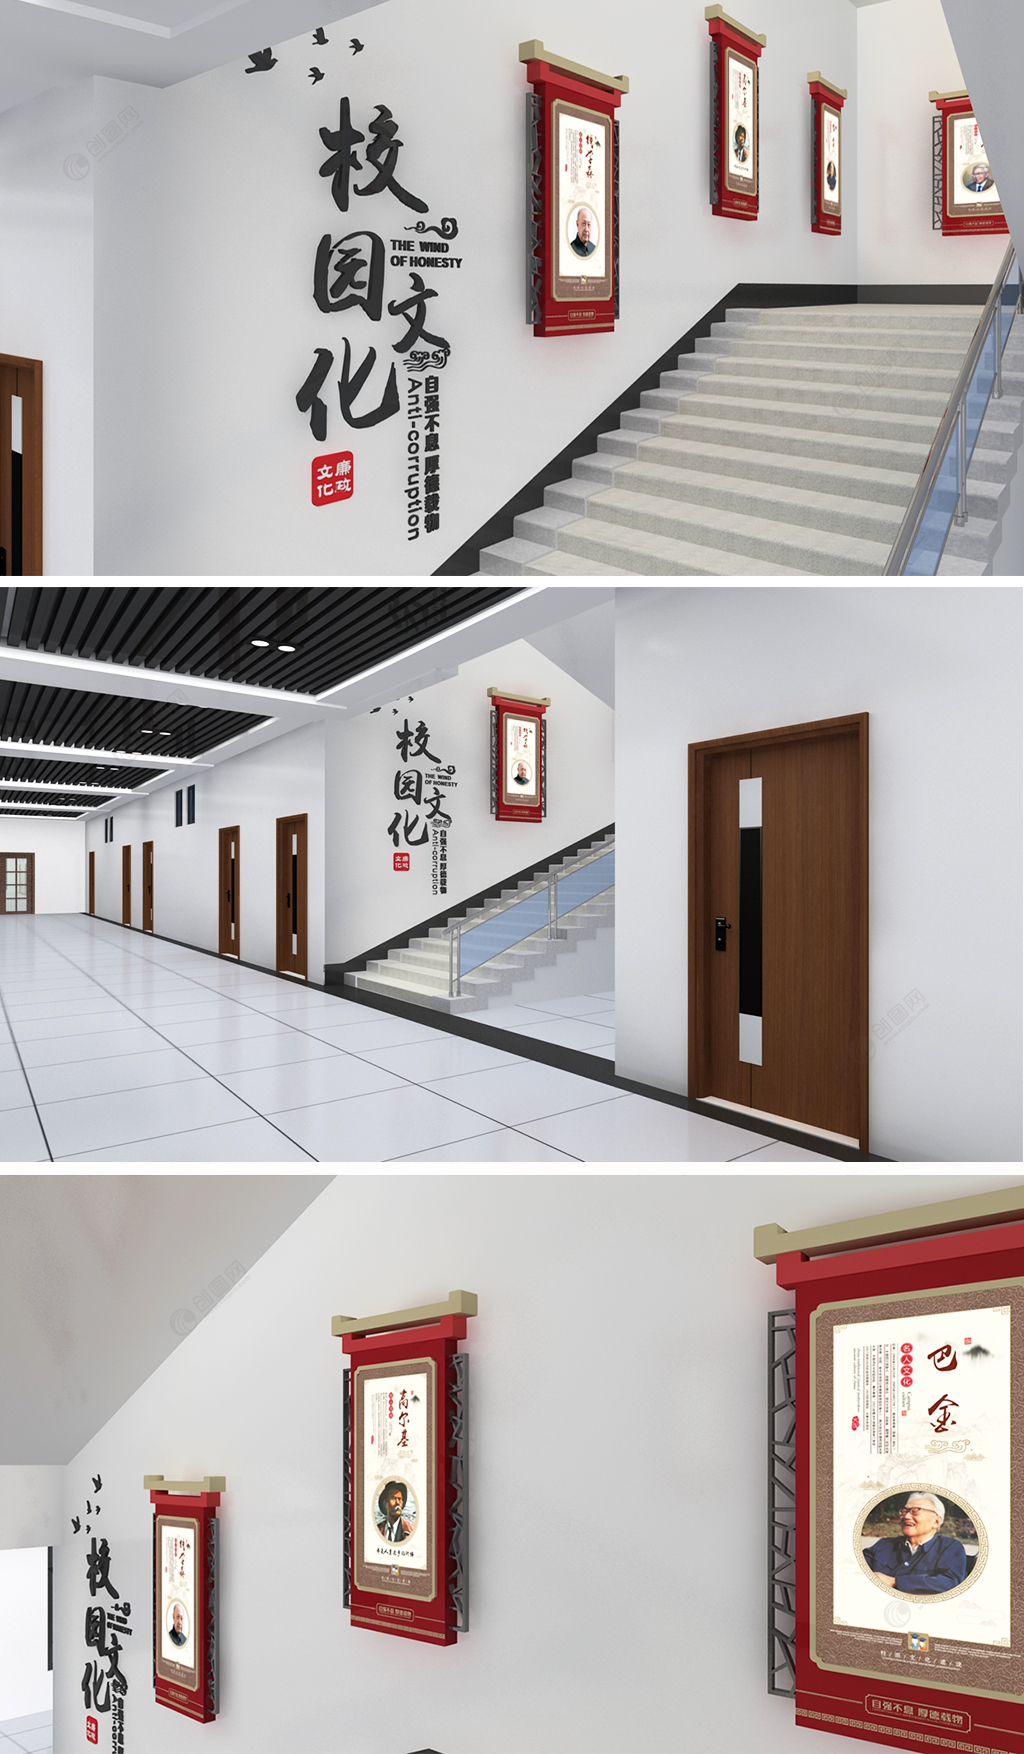 和谐楼道楼梯校园名人名言文化墙名人墙设计